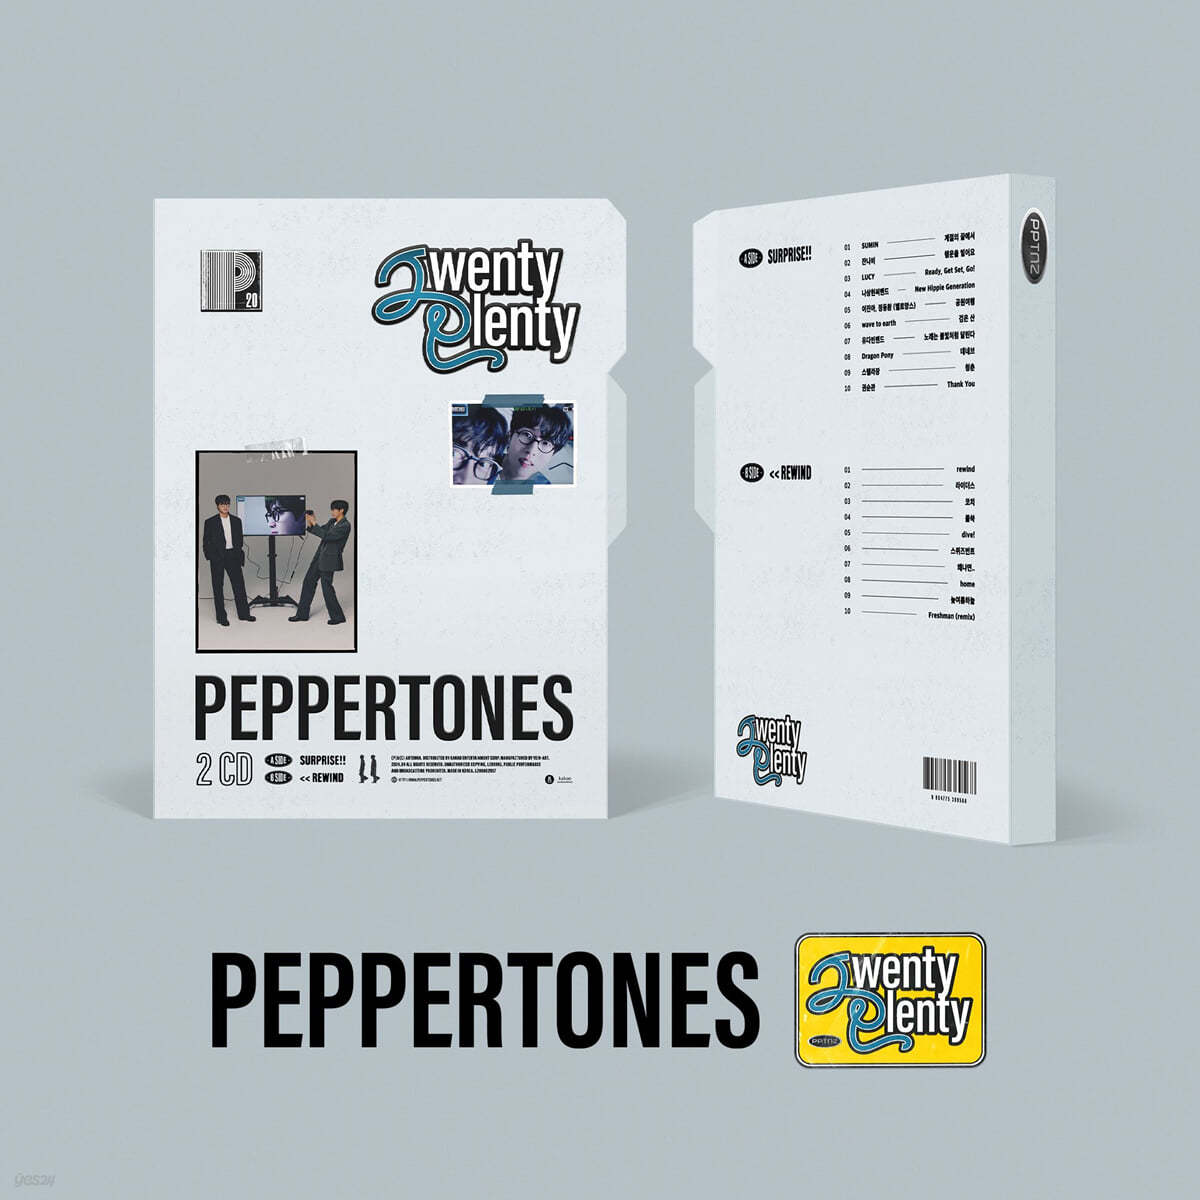 페퍼톤스 (Peppertones) - 20주년 앨범 [Twenty Plenty]